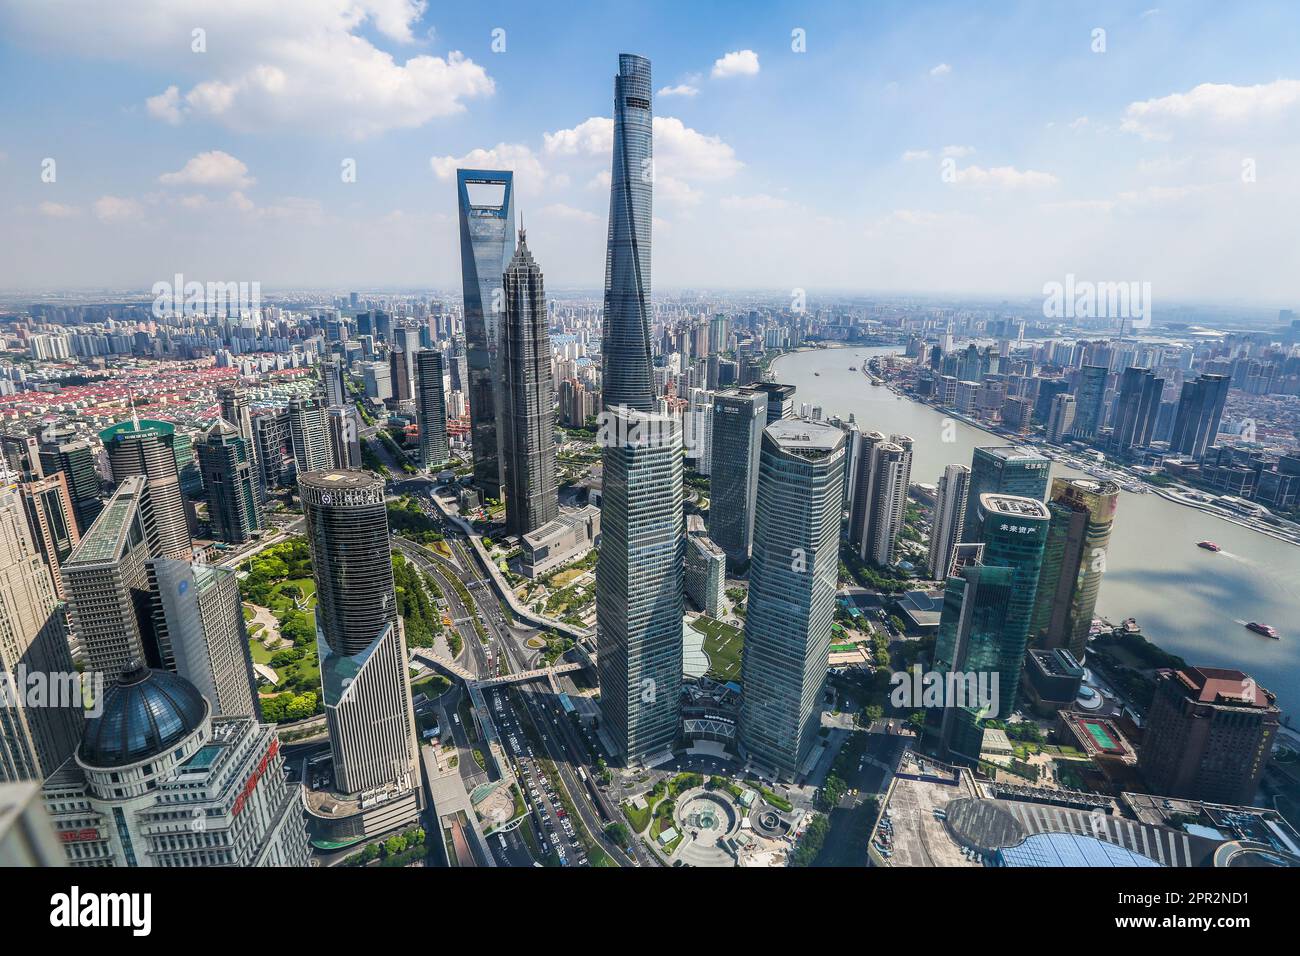 Vue sur la Tour de la Perle orientale sur la Tour de Shanghai, le plus haut immeuble de grande hauteur en Chine, le centre financier des affaires, les gratte-ciel et la rivière Huangpu Banque D'Images